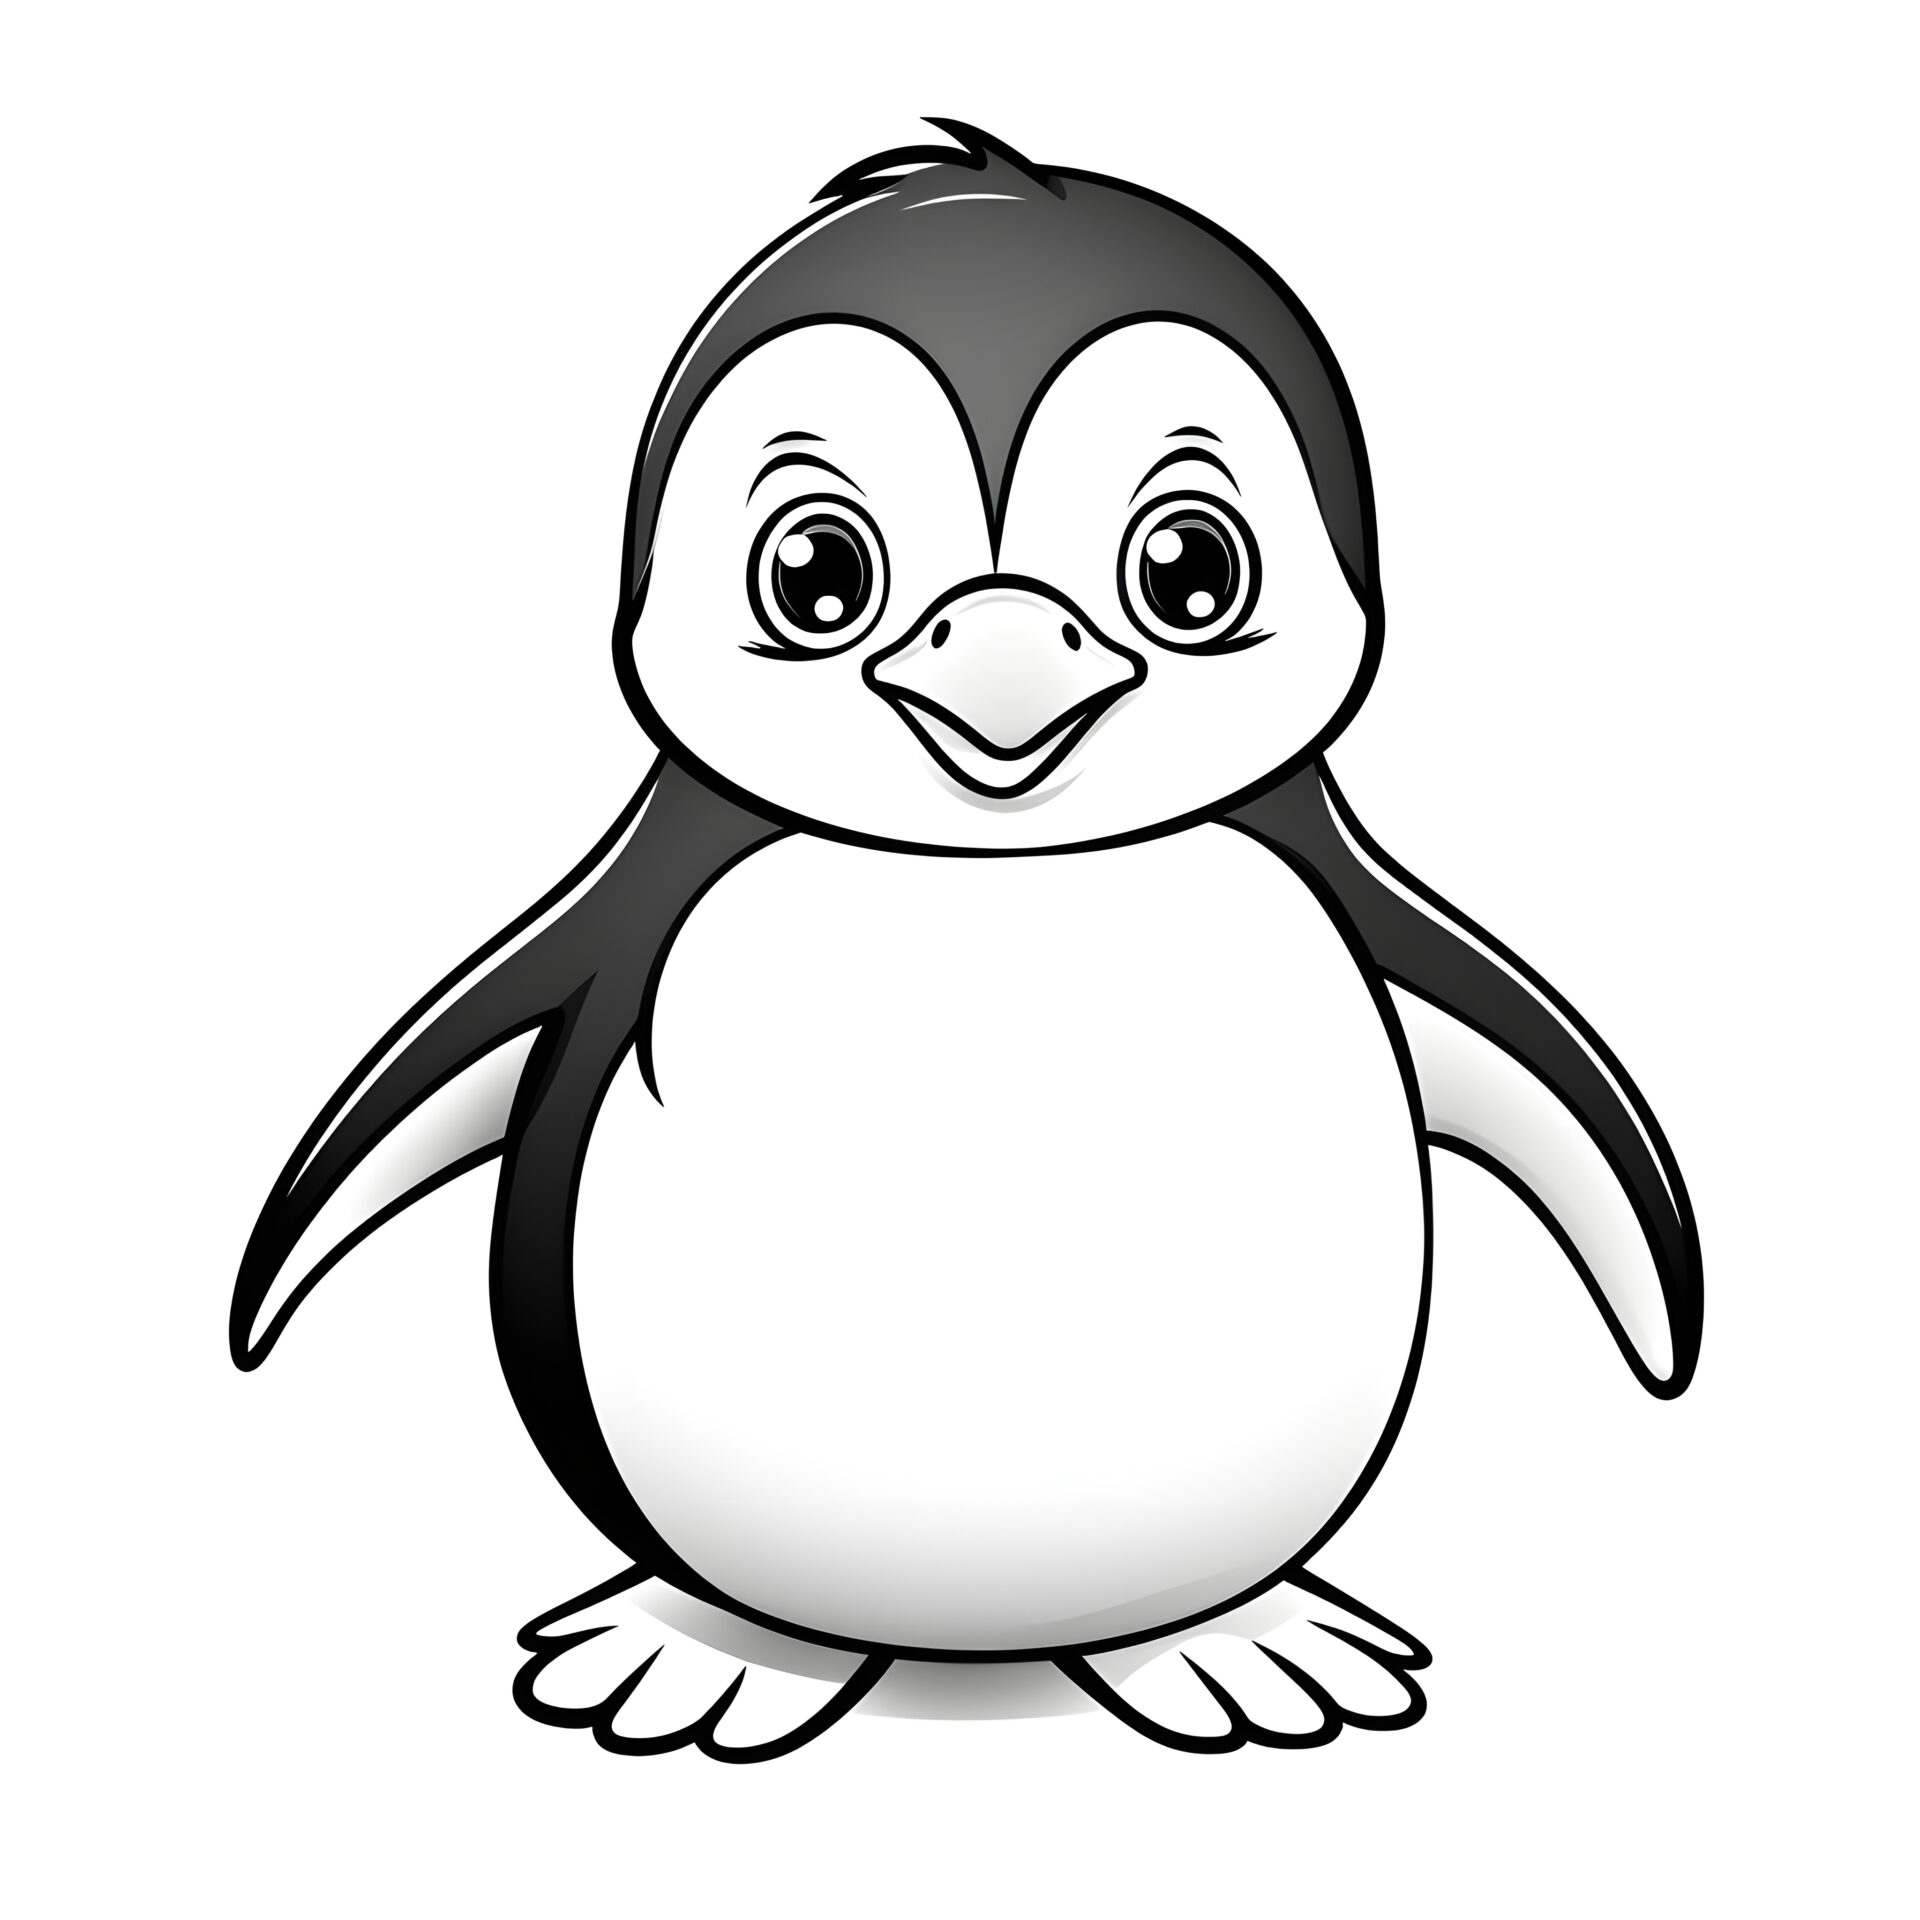 Ein sehr einfacher Cartoon-Pinguin in einem Malbuch für Kinder